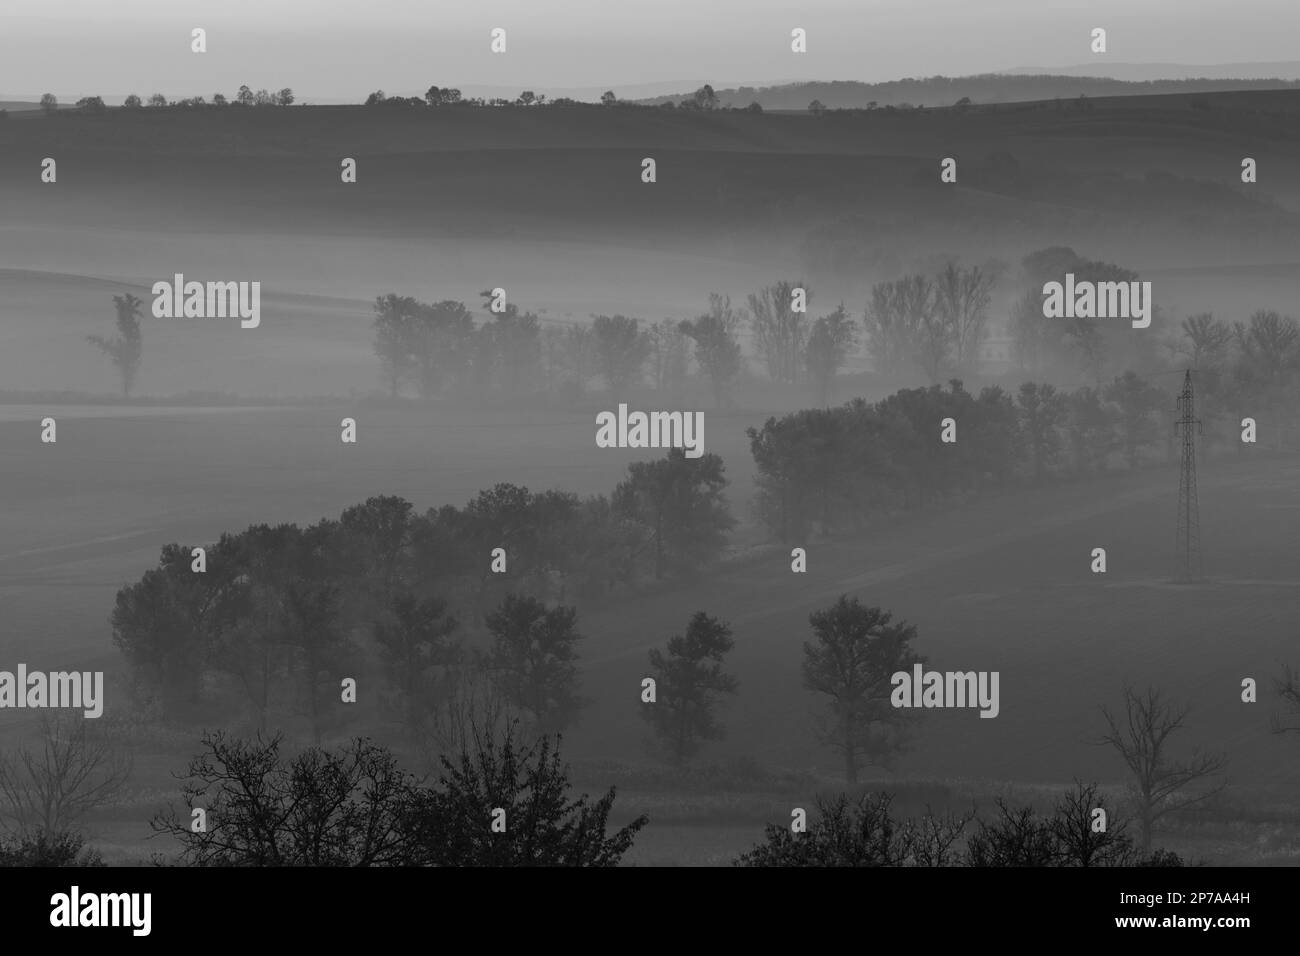 Wunderschöne mährische Felder mit Alleen von Bäumen, die von Morgennebel umgeben sind. Tschechische Republik, Mähren, Tschechische Republik, Europa Stockfoto